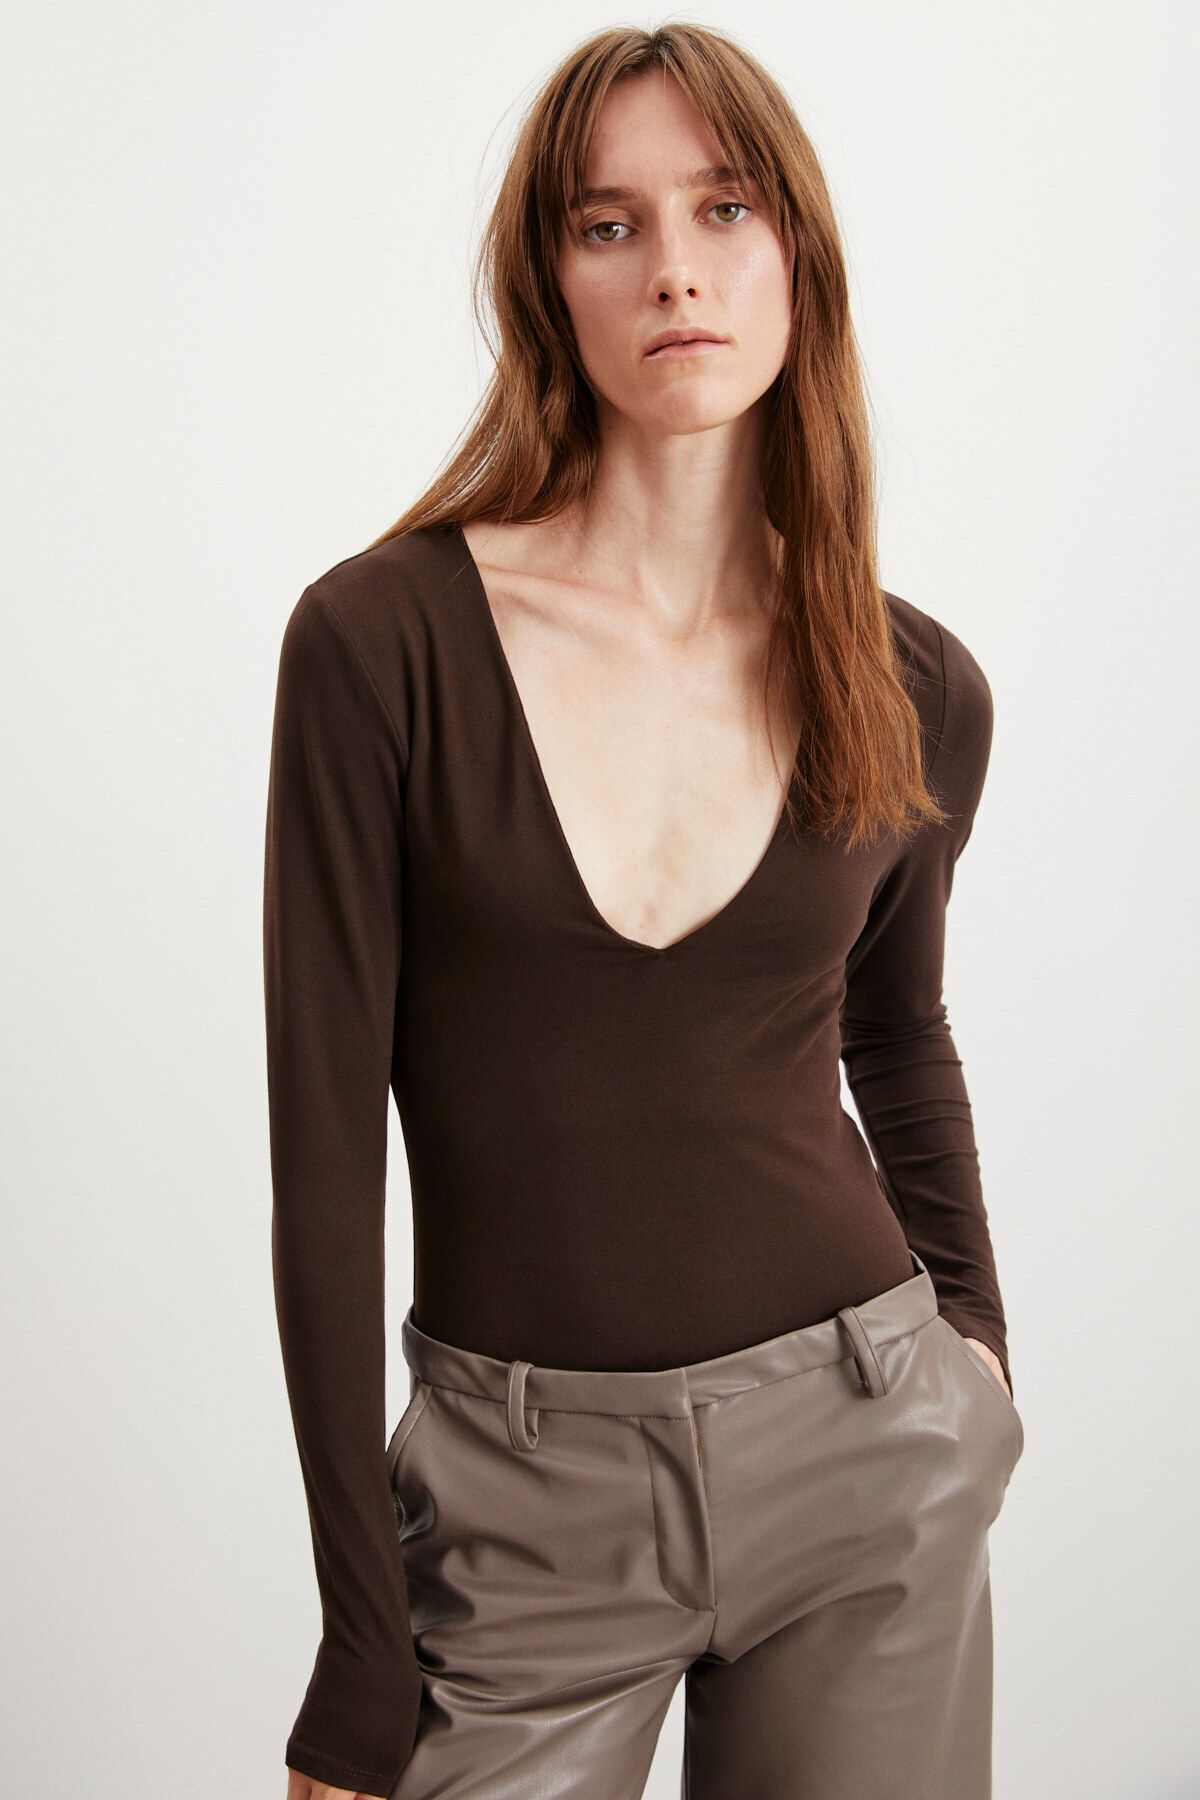 GRIMELANGE Valeri Kadın Esnek Polyester Kumaşlı Üst Kısmı Çift Kat Vücudu Saran Çıtçıtlı Kahverengi Body